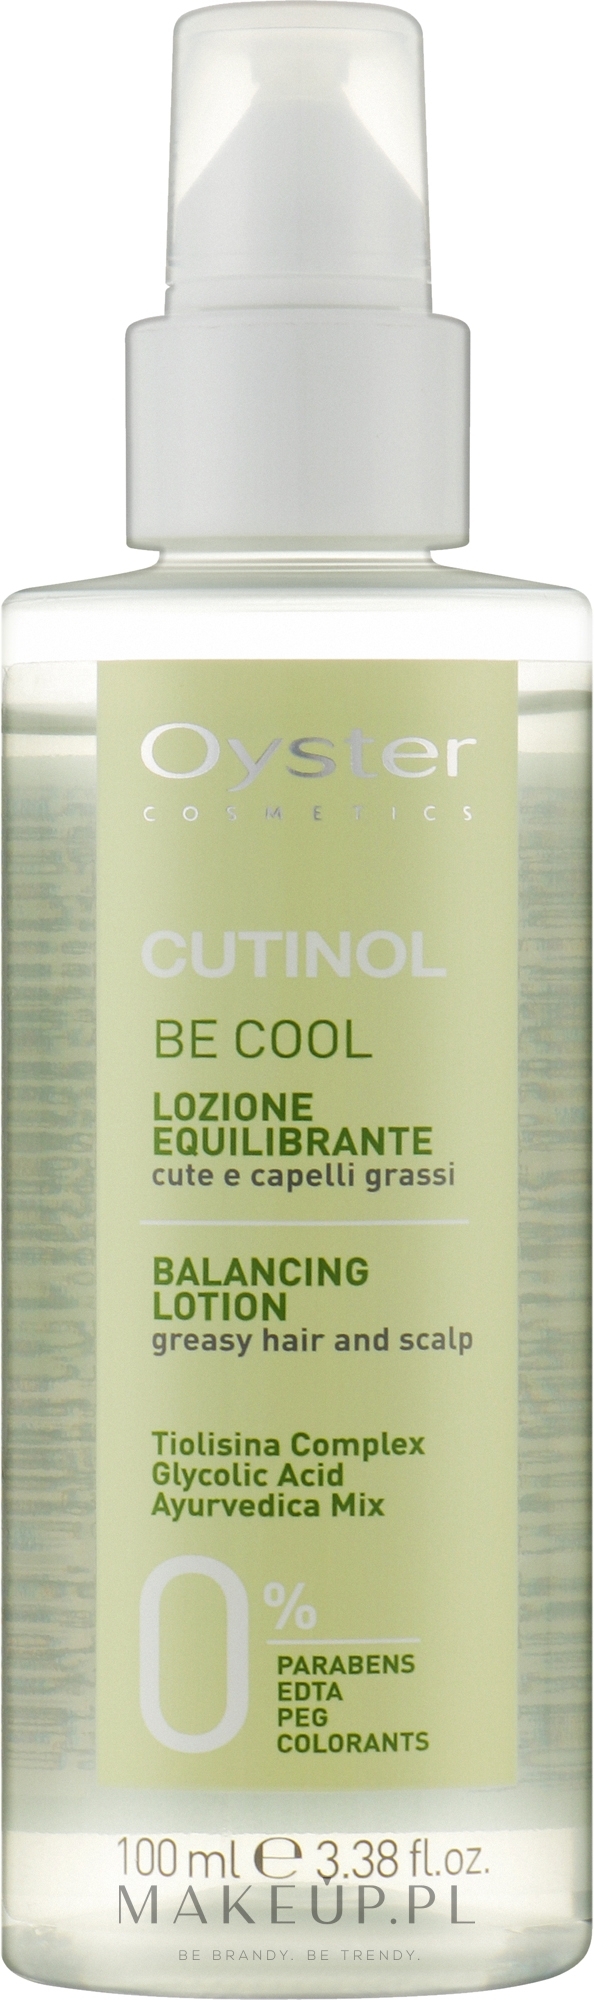 Balsam do włosów - Oyster Cosmetics Cutinol Be Cool Balsam Normalization Sebum  — Zdjęcie 100 ml